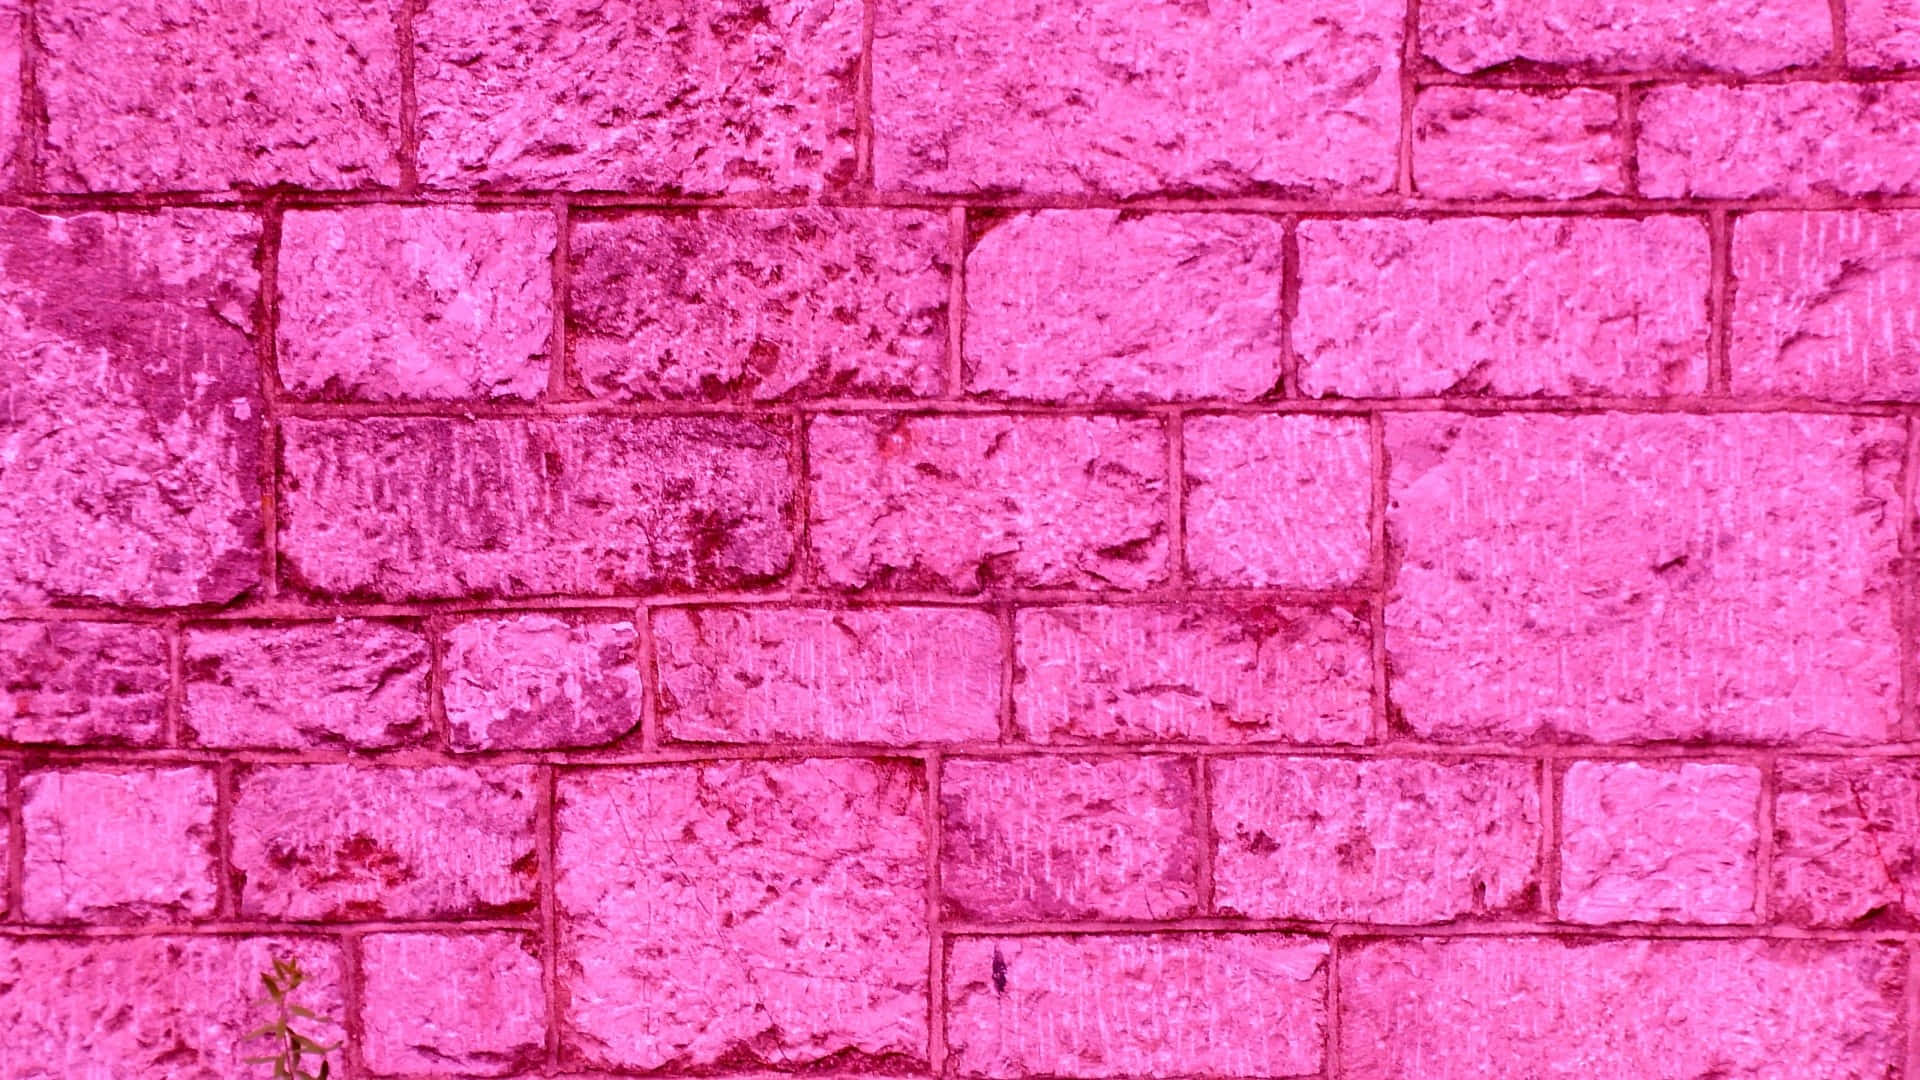 White Grunge Aesthetic on Pink Brick Background